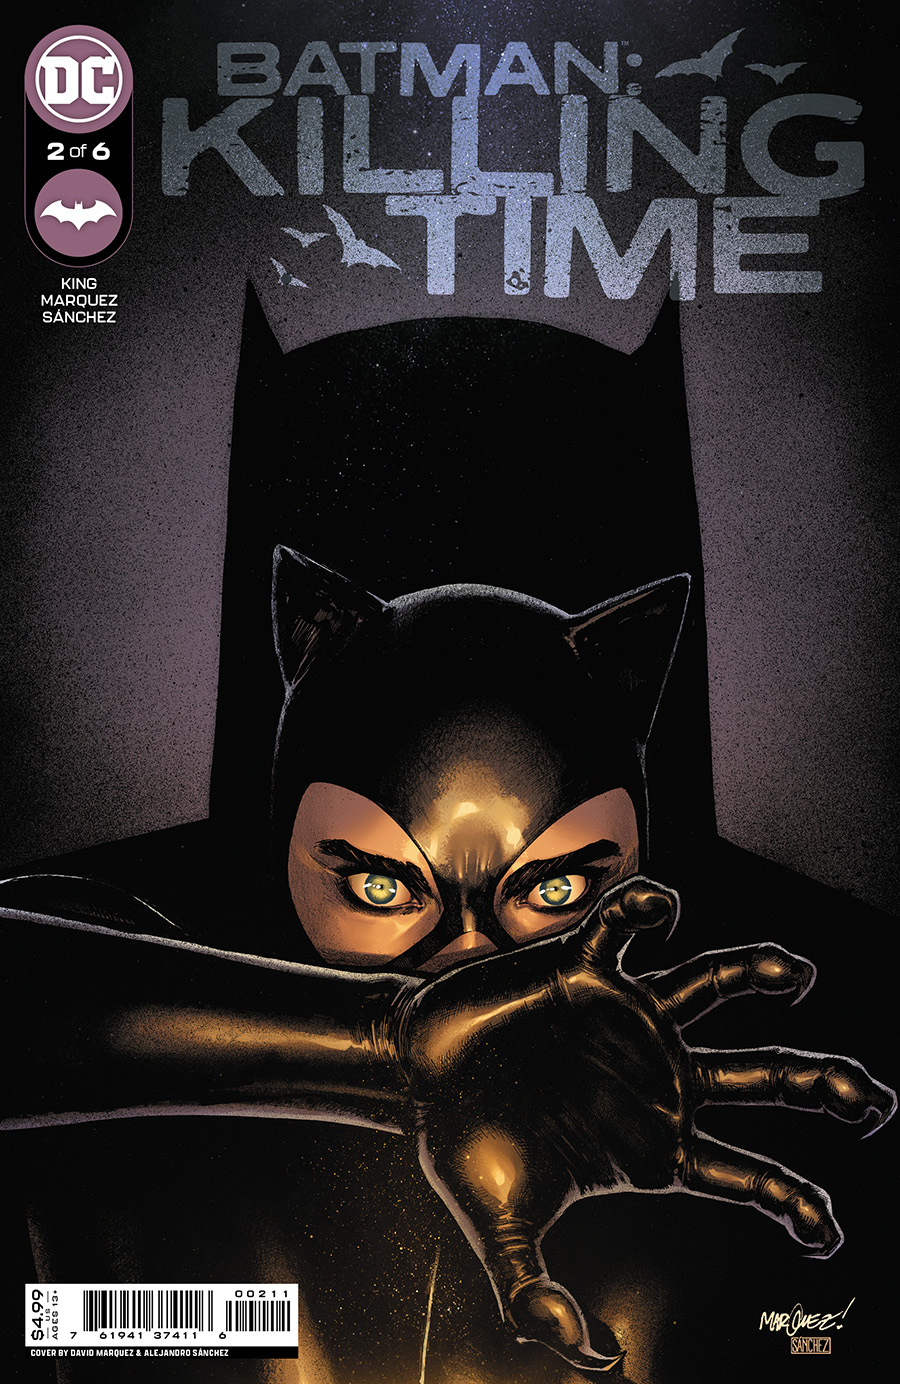 Batman Killing Time #2 Cover A Regular David Marquez & Alejandro Sanchez Cover